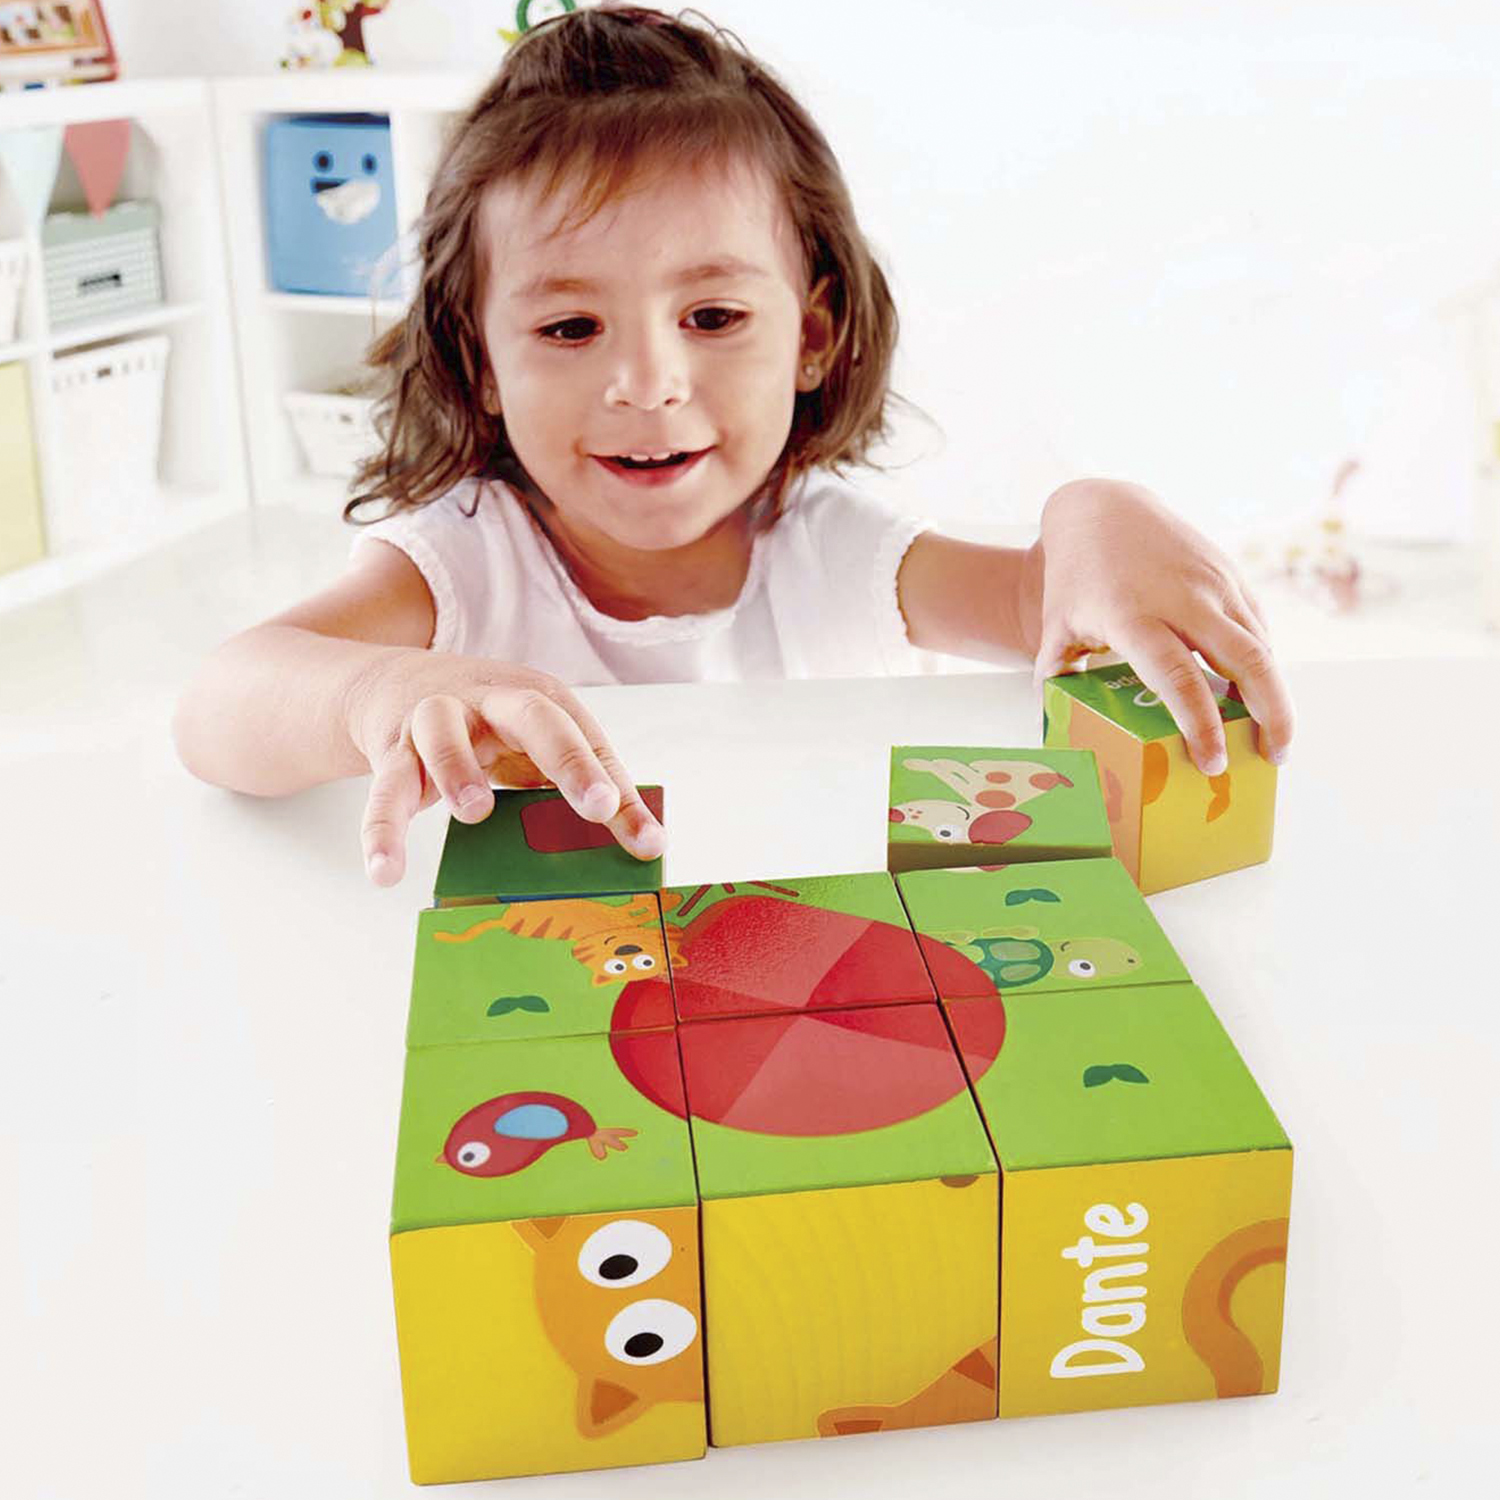 Развивающая игрушка Hape Кубики-пазлы Лили 9 элементов, 6 вариантов картинок, деревянные кубики деревянные